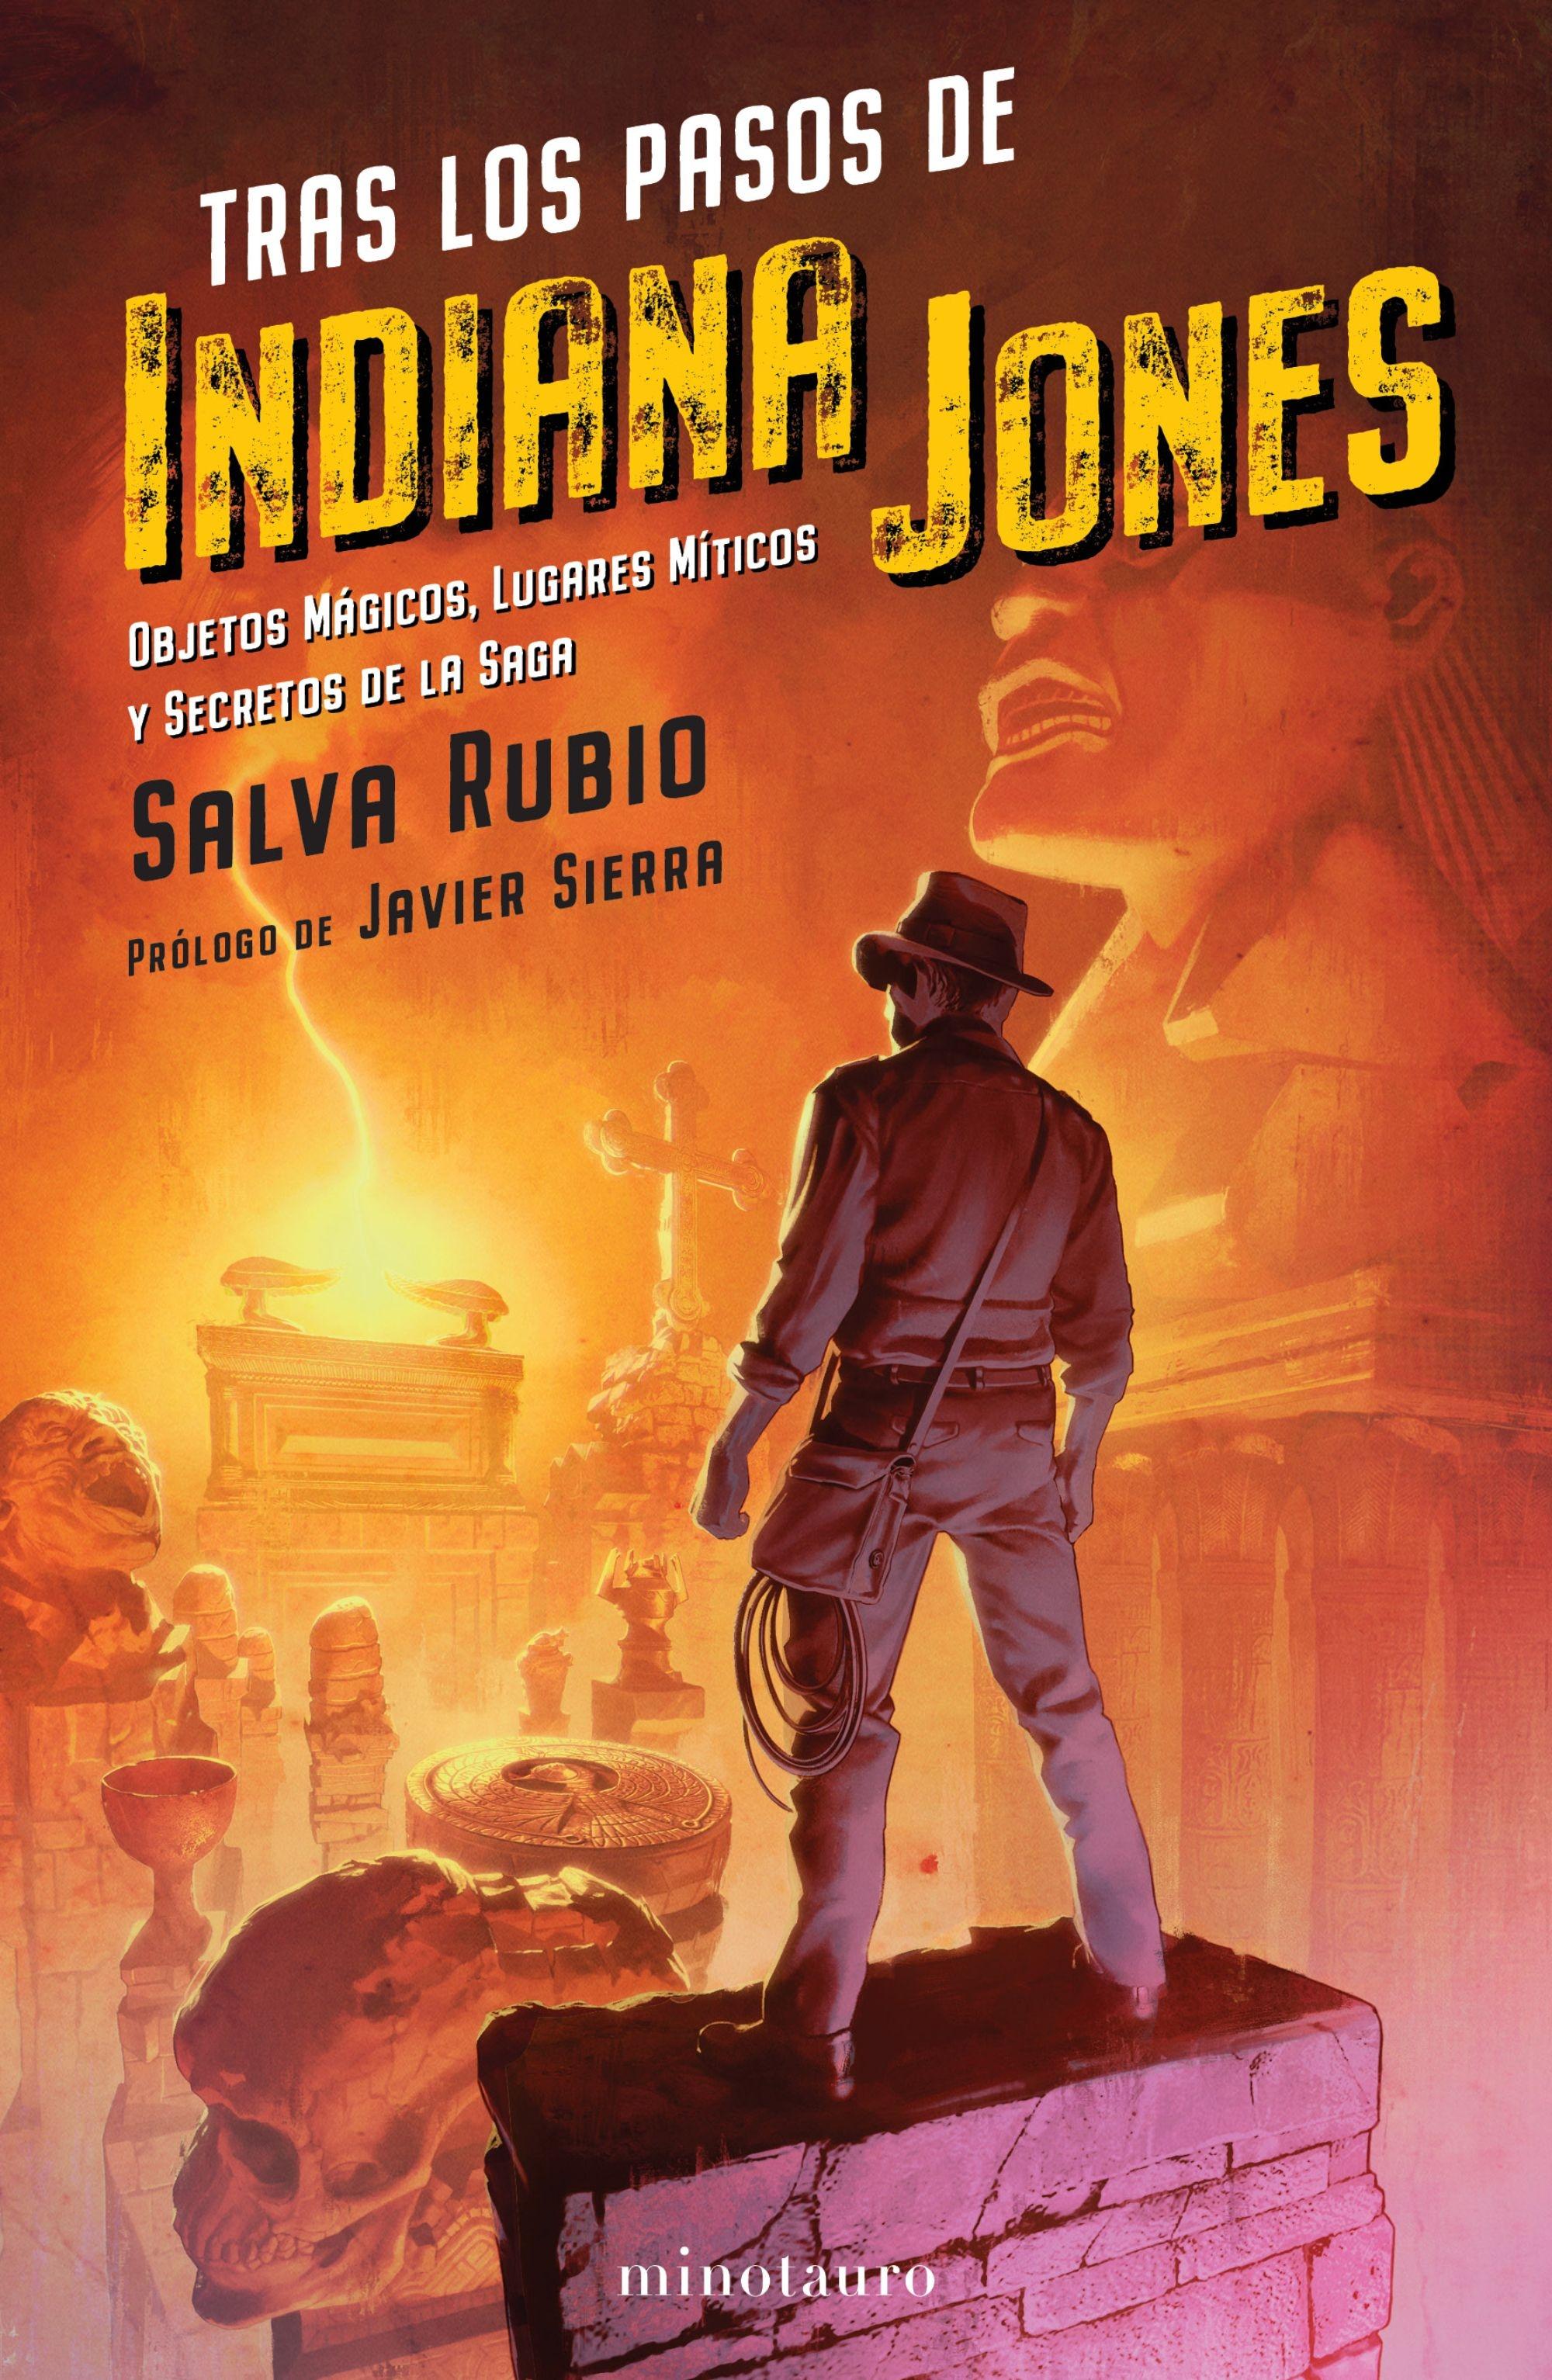 Tras los pasos de Indiana Jones "Objetos mágicos, lugares míticos y secretos de la saga"